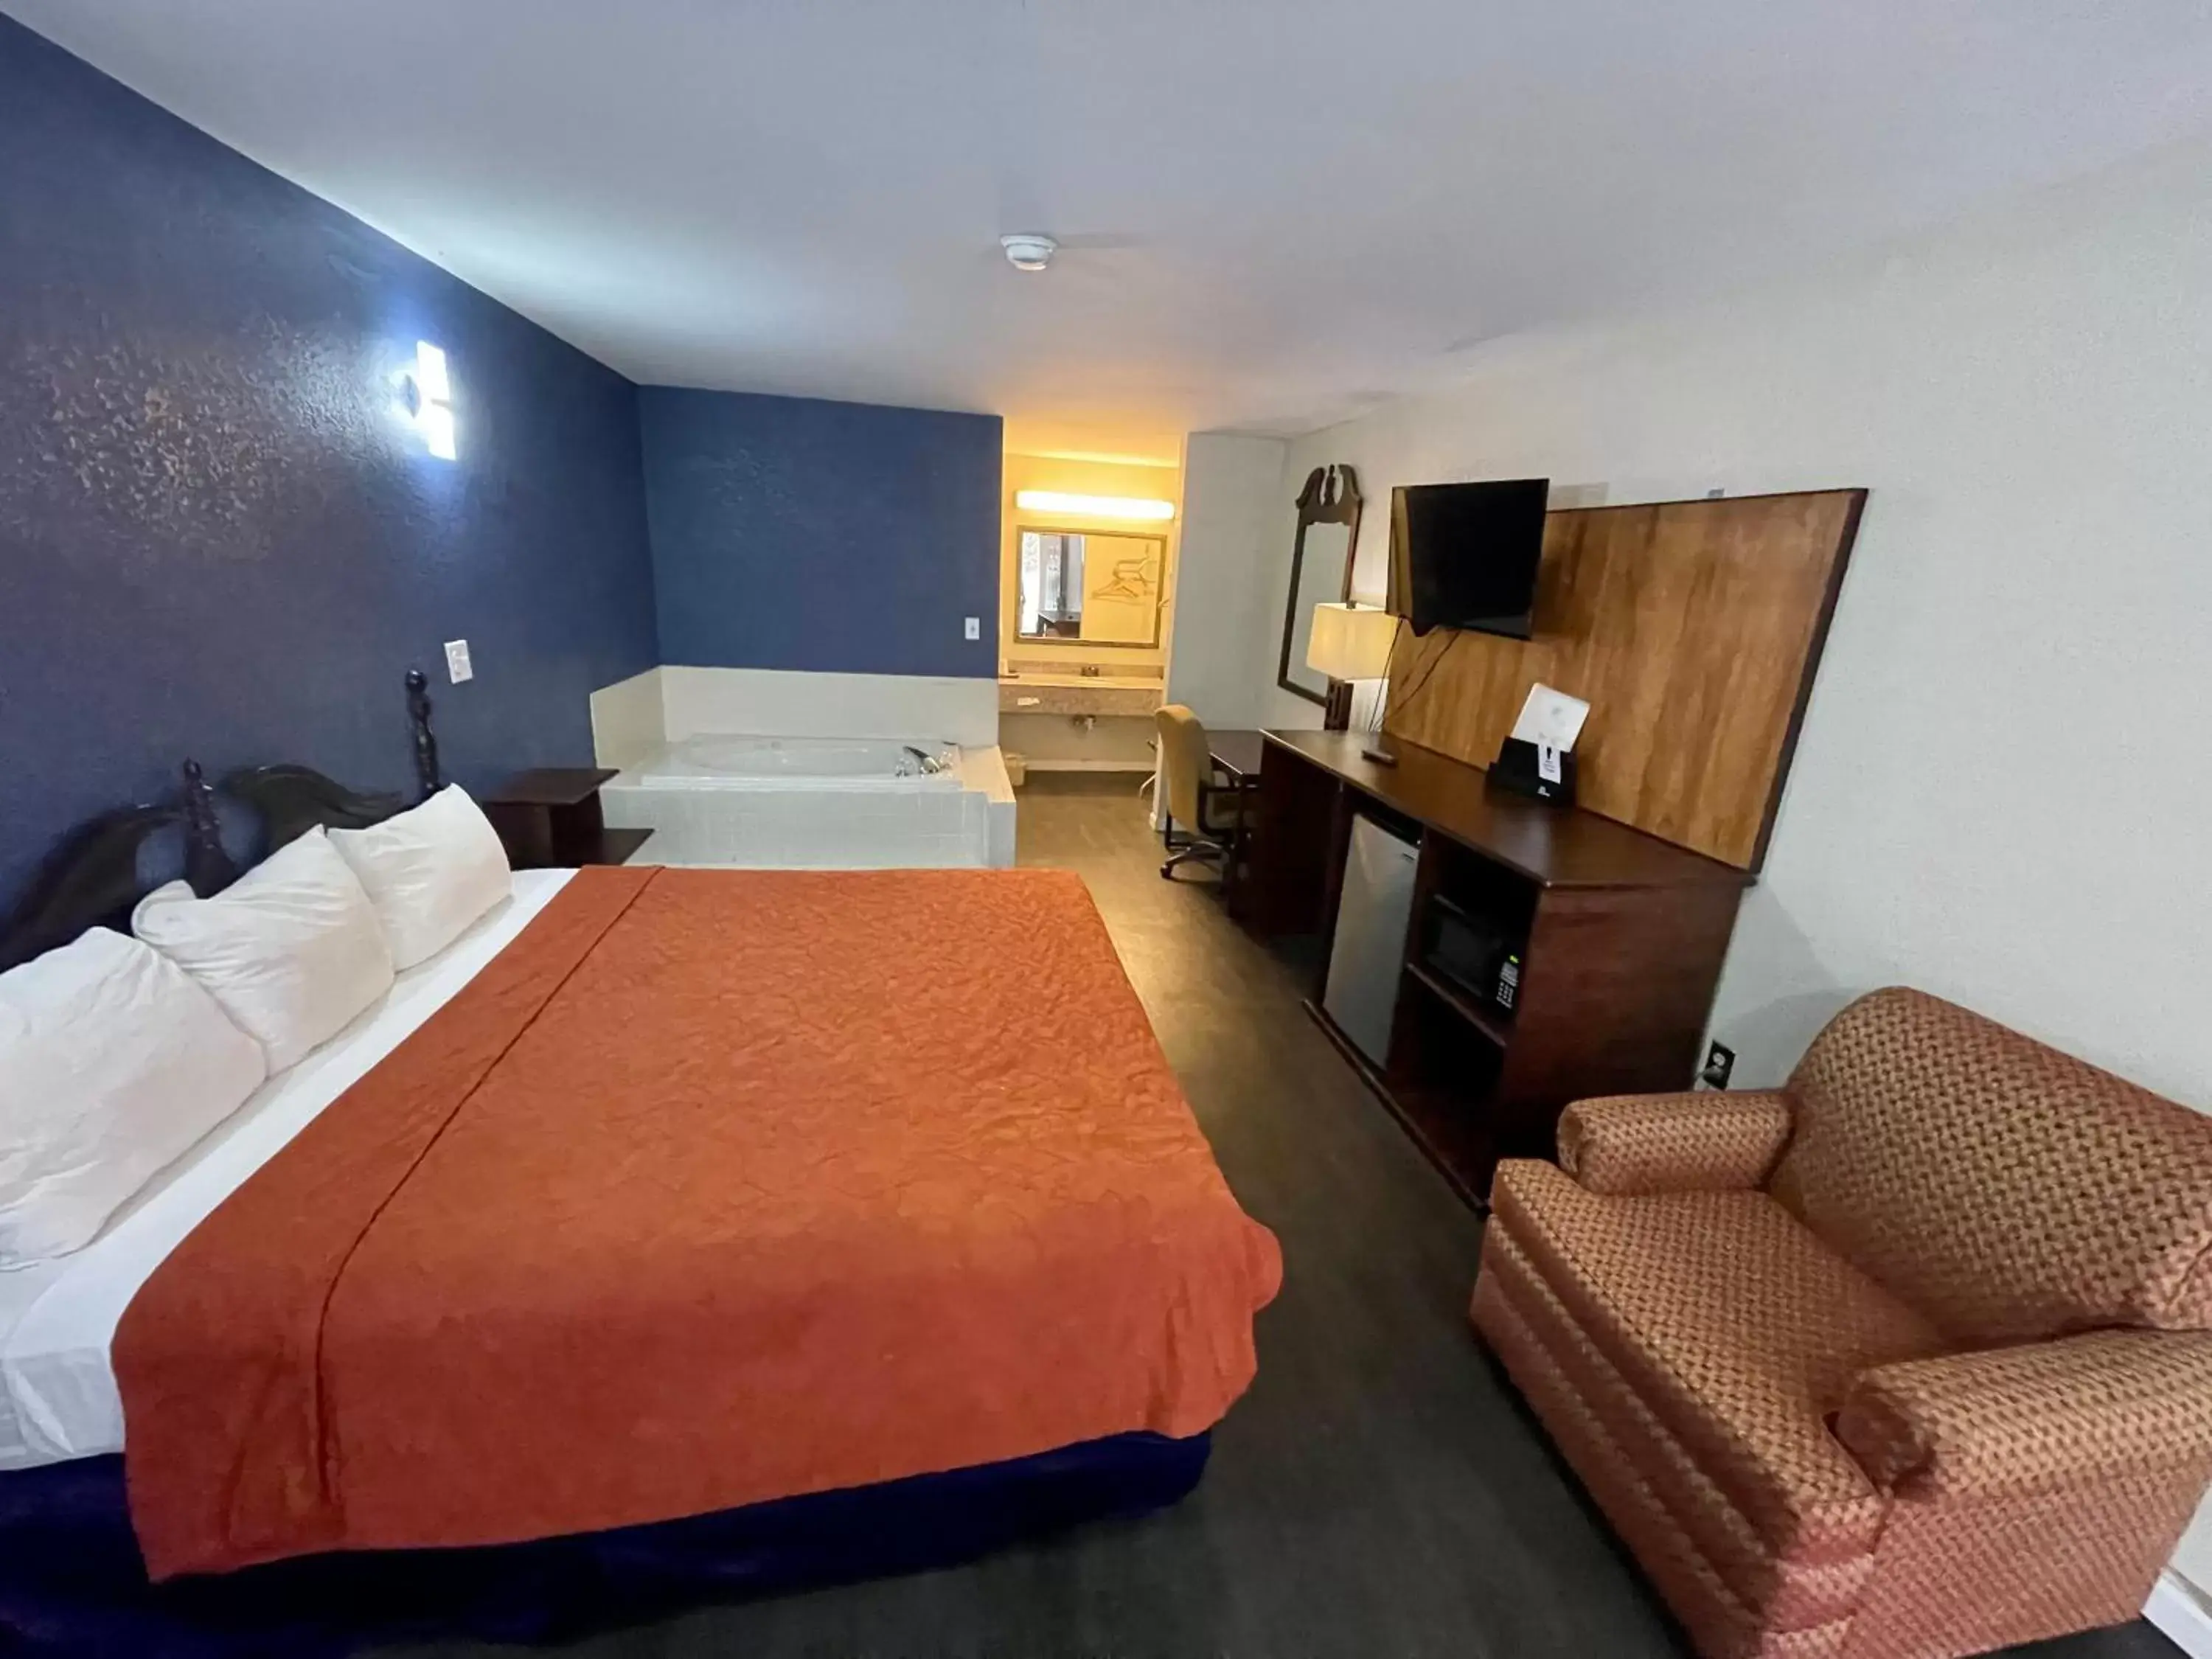 Bed in Key West Inn - Roanoke